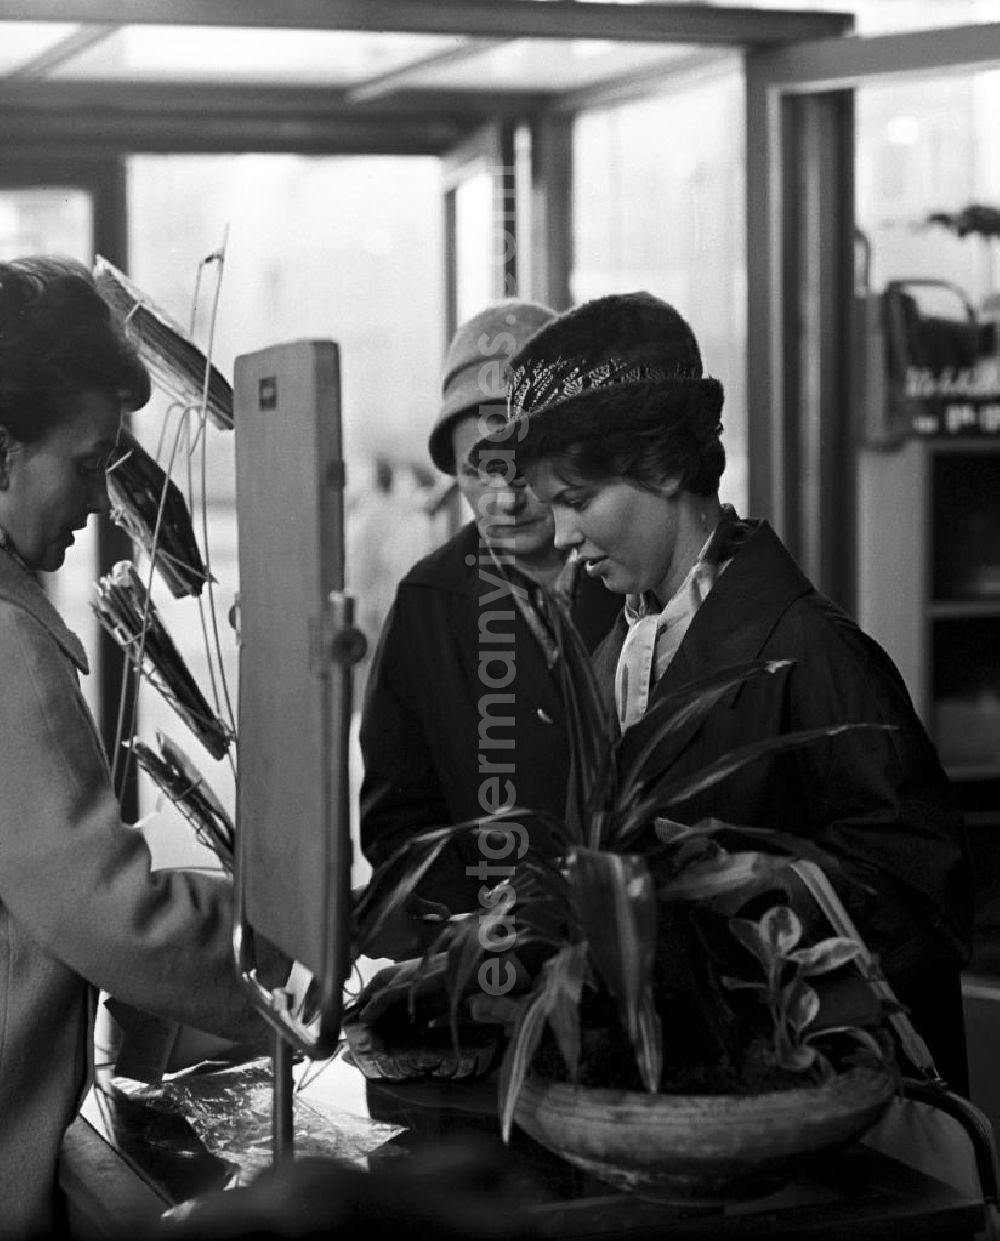 GDR photo archive: Berlin - Eine Verkäuferin berät in einem Damenmode-Geschäft in Berlin zwei Kundinnen bei der Auswahl von Handschuhen.